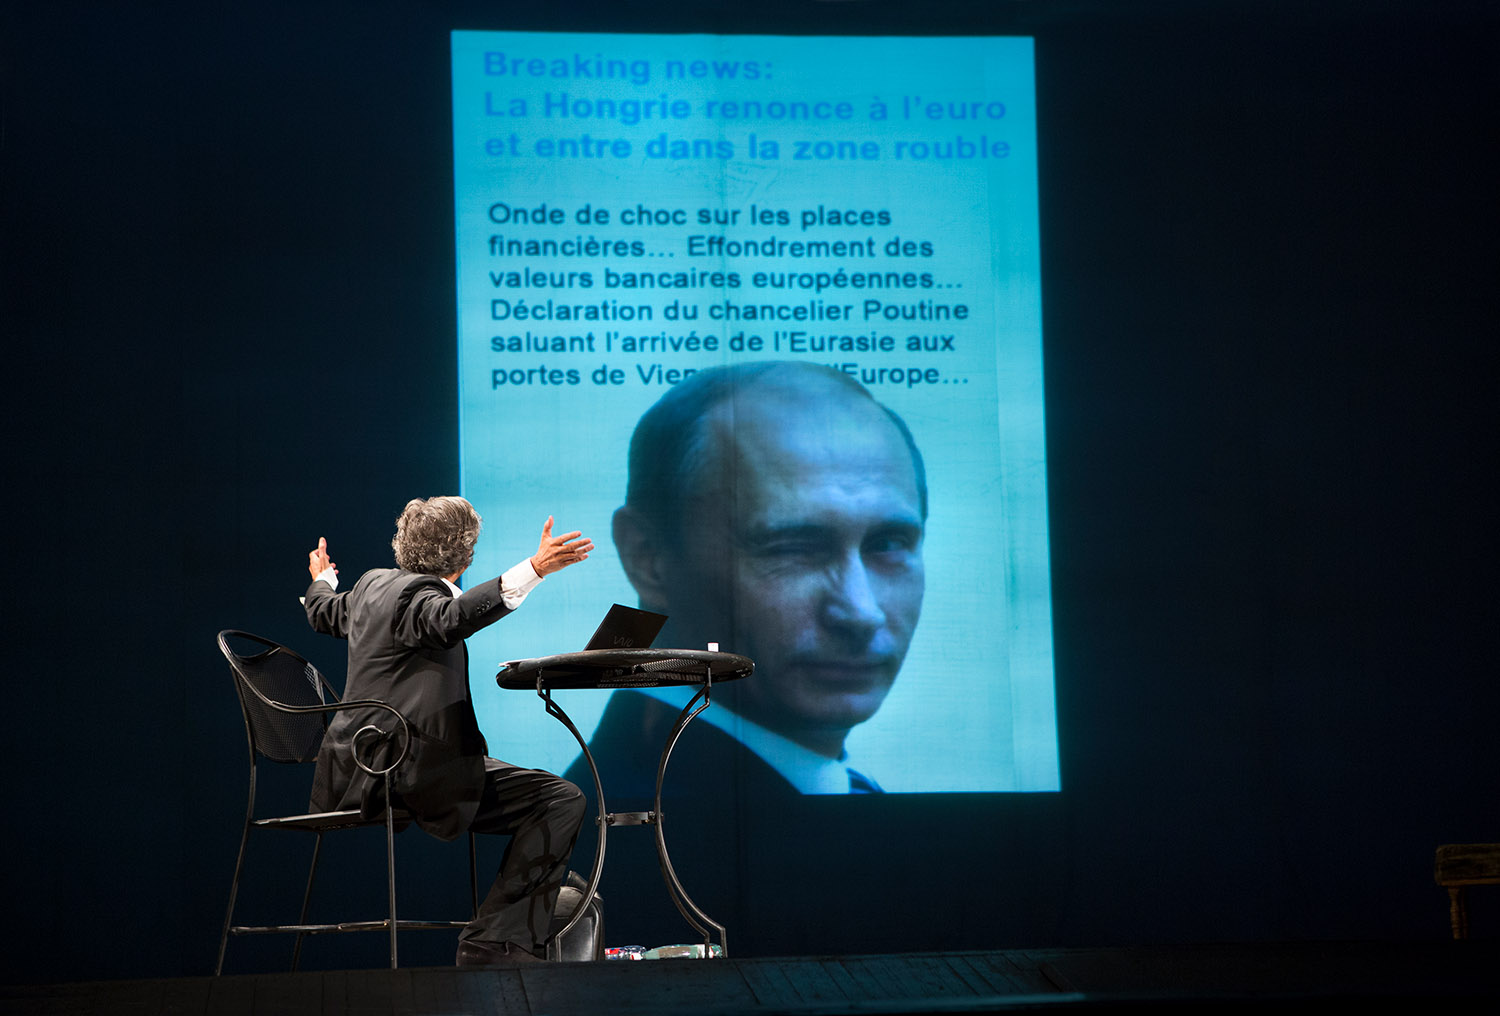 Bernard-Henri Lévy évoque Poutine, la Hongrie et l'Europe, dans l'interprétation qu'il fait de sa pièce « Hôtel Europe » à l'Opéra d'Odessa. Assis devant son ordinateur, BHL regarde le fond de la scène où est projeté le visage de Poutine faisant un clin d'oeil pour illustrer un article sur l'Europe, Poutine et la Hongrie.